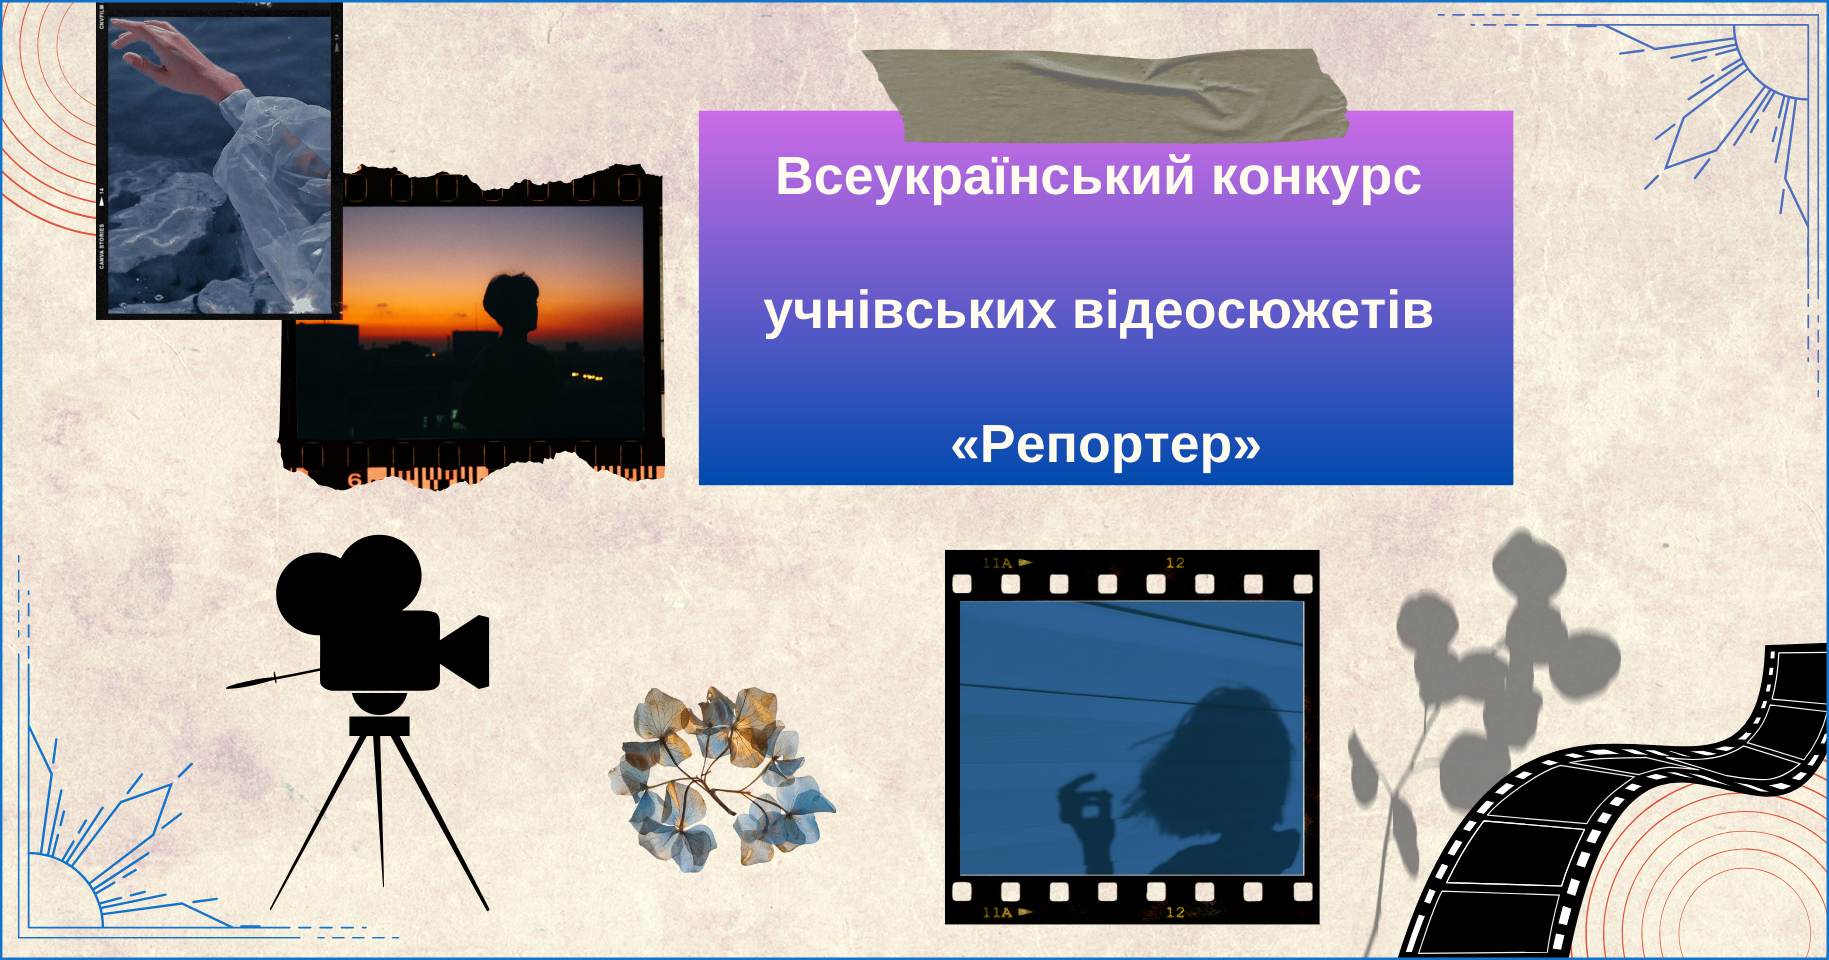 Всеукраїнський конкурс учнівських відеосюжетів «Репортер»